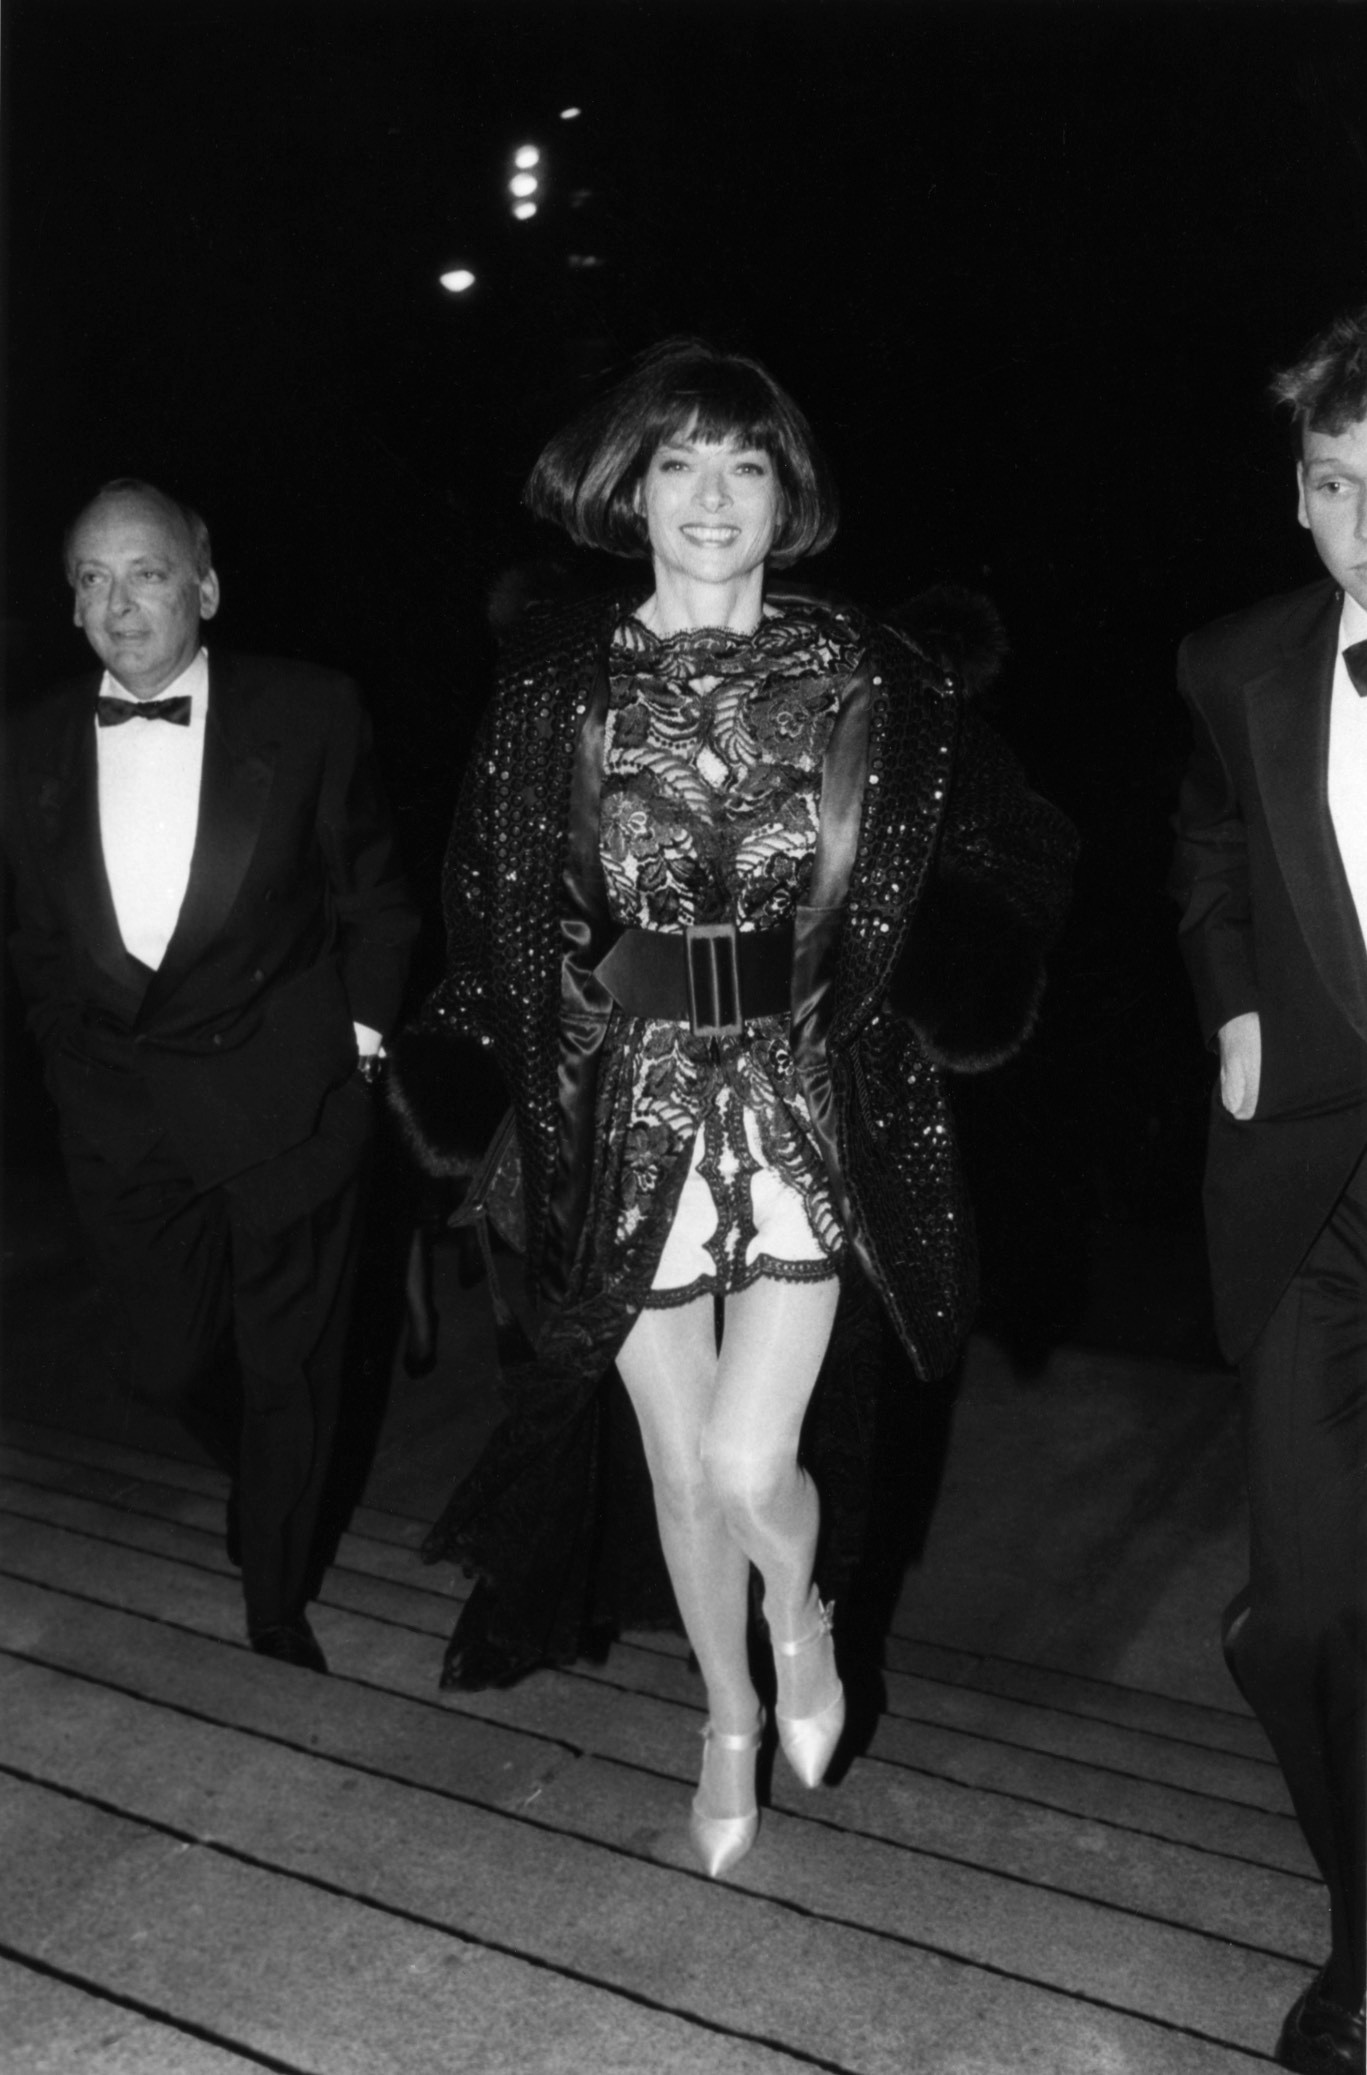 Анна Винтур, Совет модельеров Америки, 1991. Фотограф Билл Каннингем